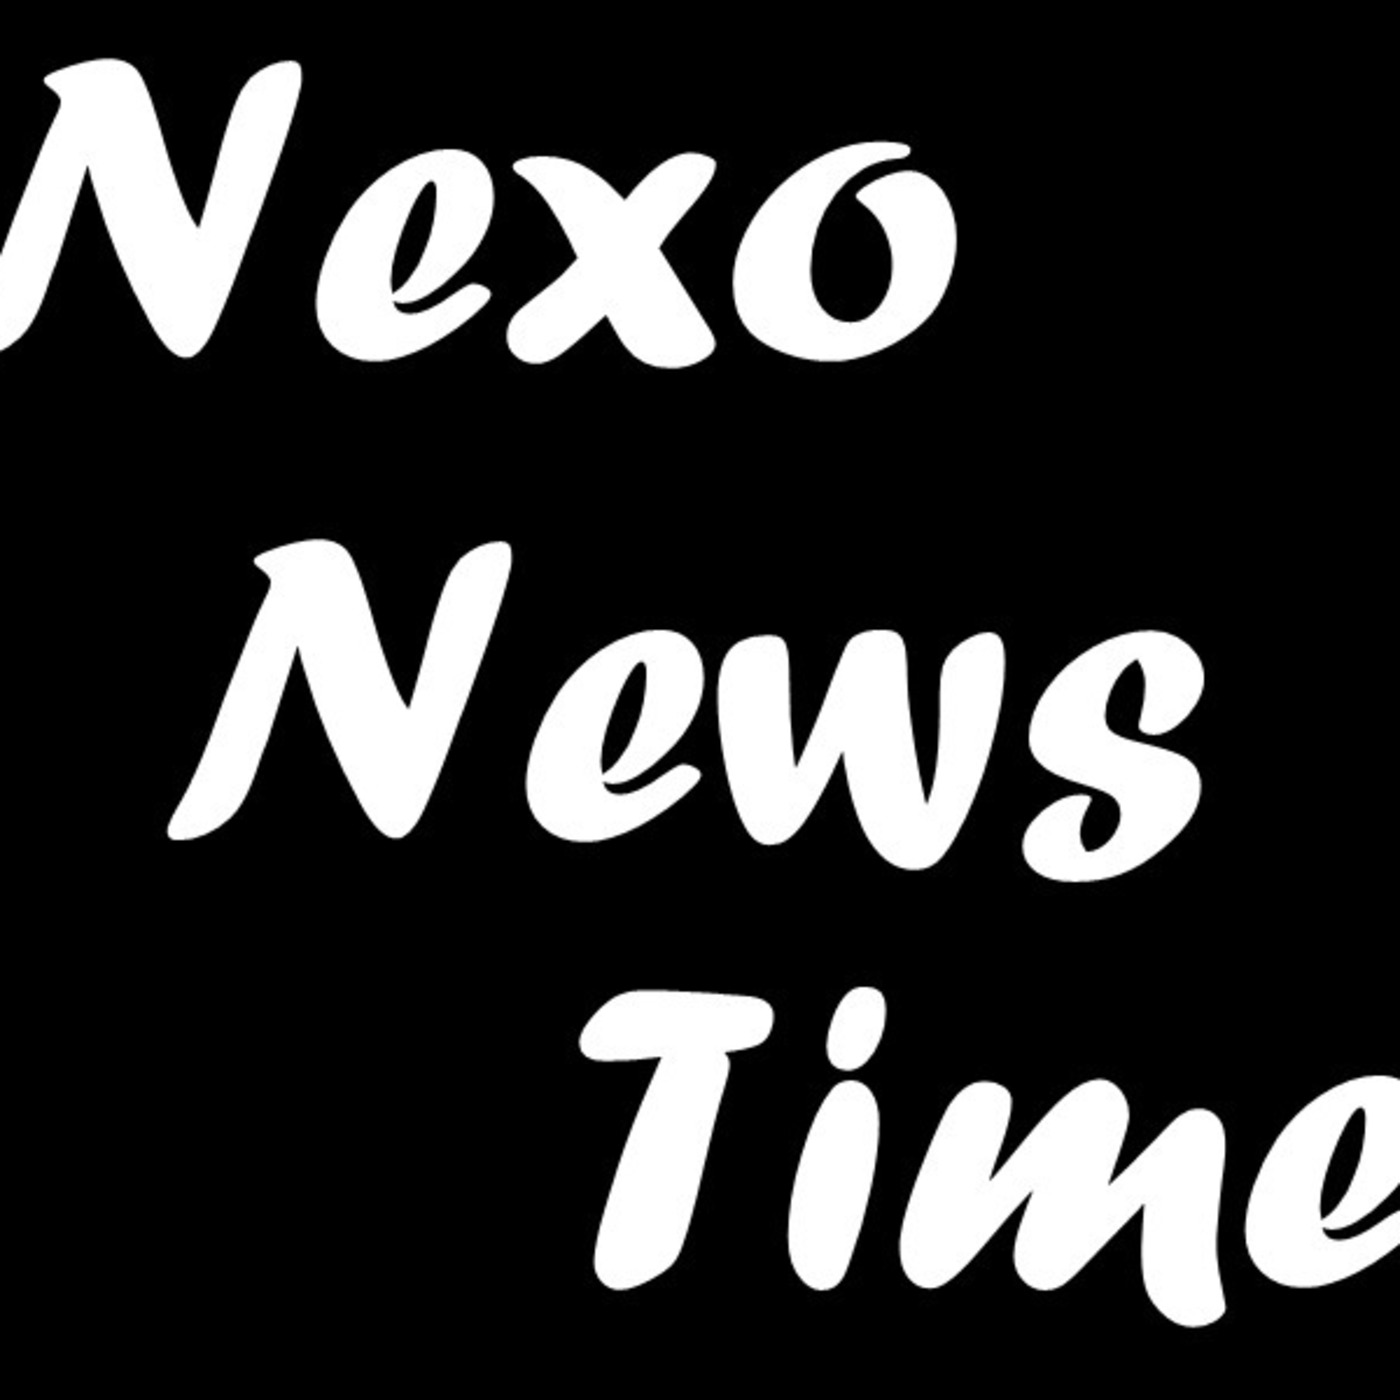 Nexo News Time!